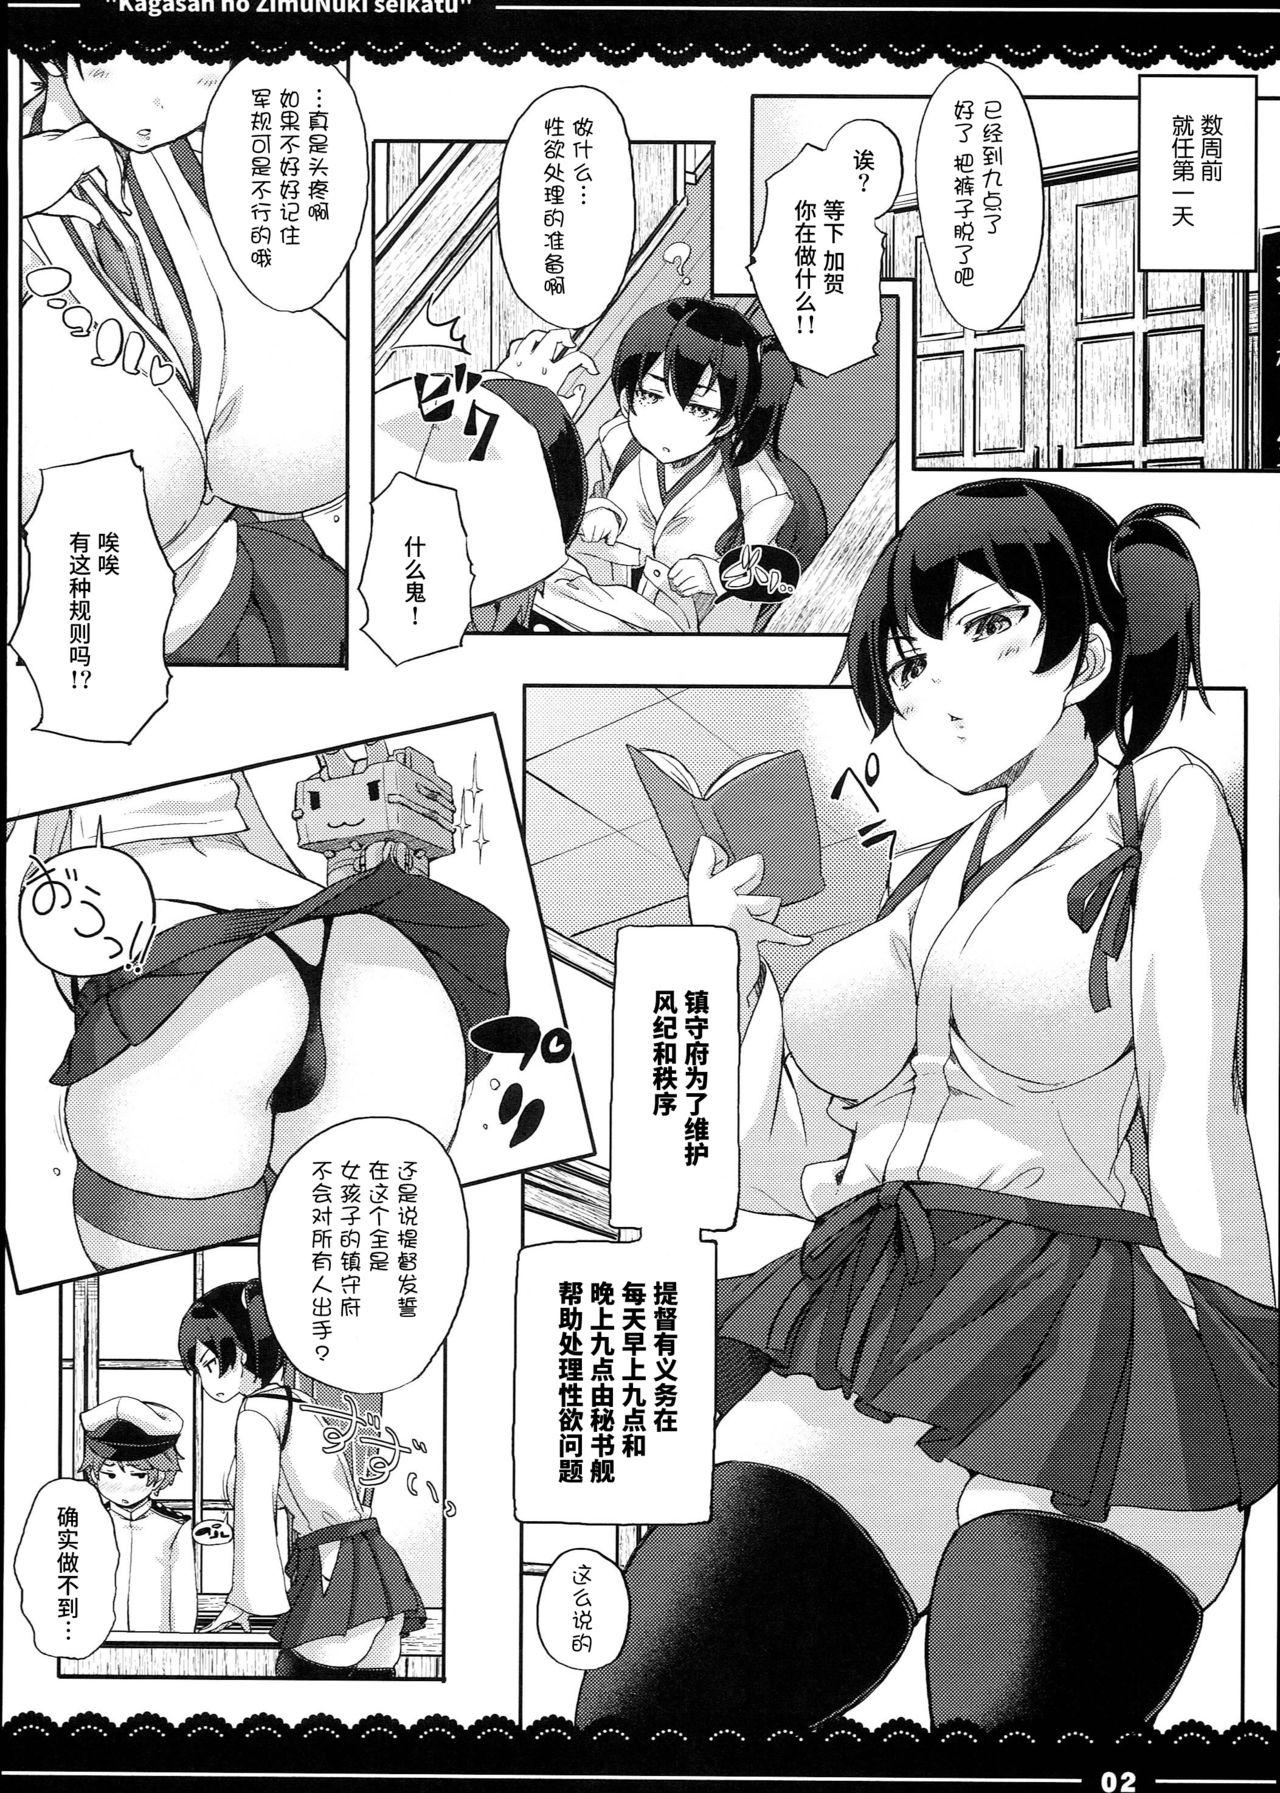 Russian Kaga-san no Jimunuki Seikatsu - Kantai collection 3some - Page 4